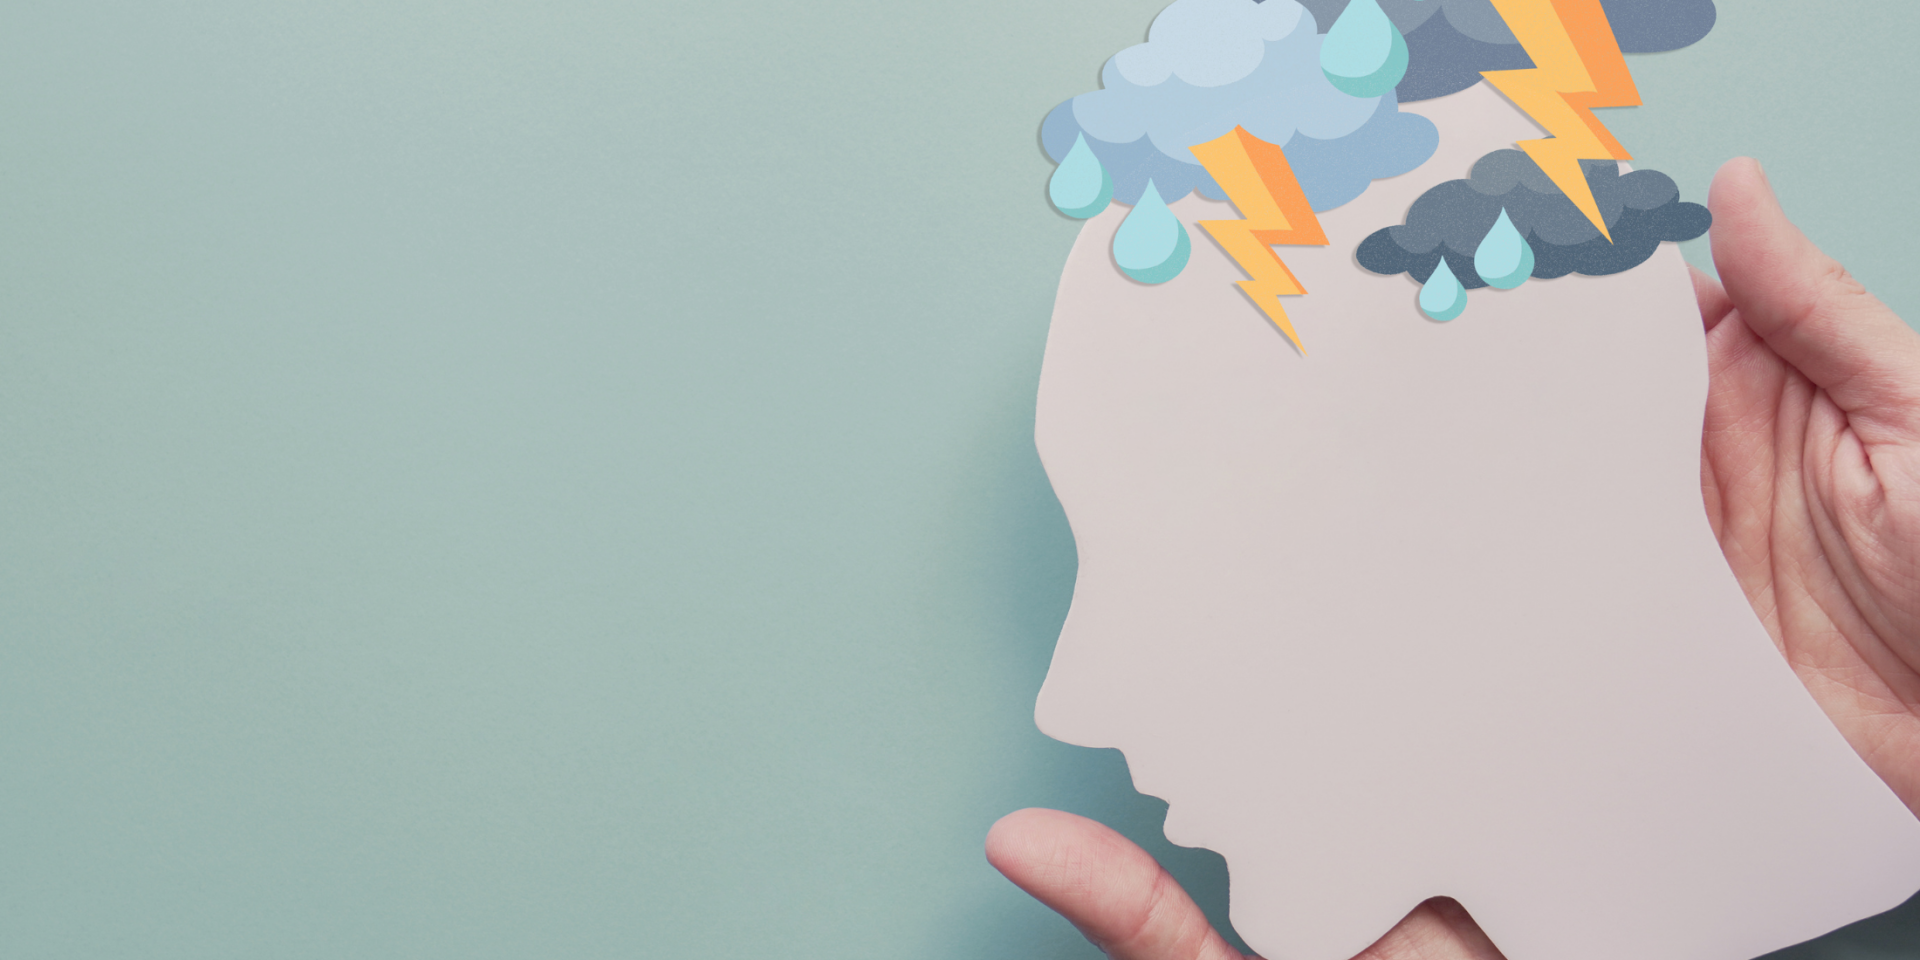 Gewitter im Kopf aus Pappe – Symbolbild für Depressionen